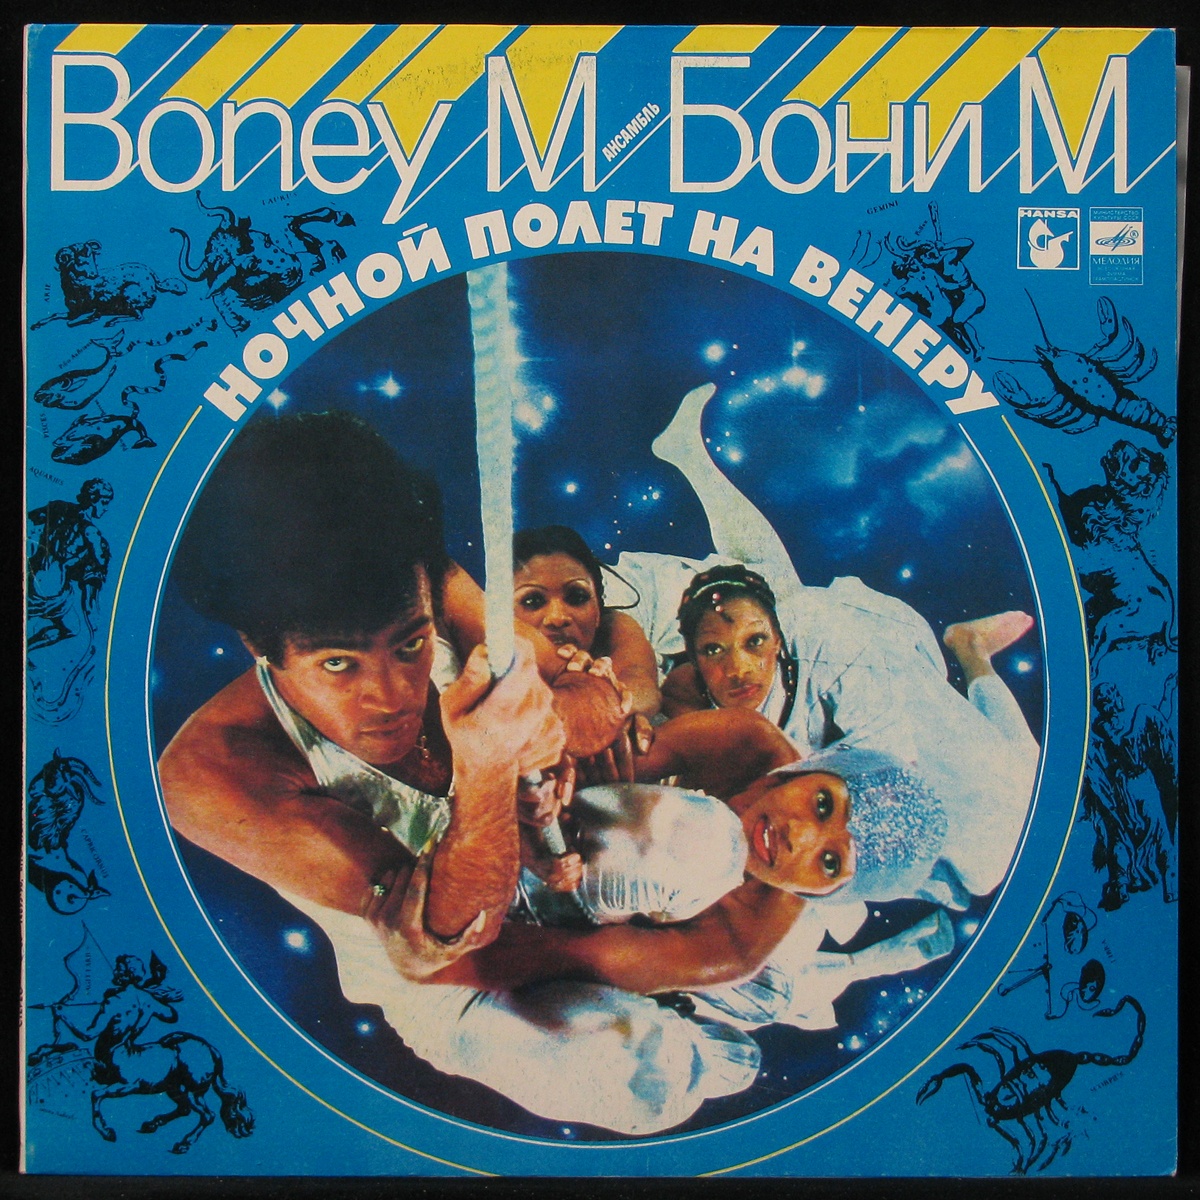 Boney m nightflight. Boney m Venus Nightflight LP. Boney m Nightflight to Venus 1978 пластинки. Boney m пластинка. Бони м. ночной полет на Венеру ("мелодия", с60-14895-96] 1980) обложка.